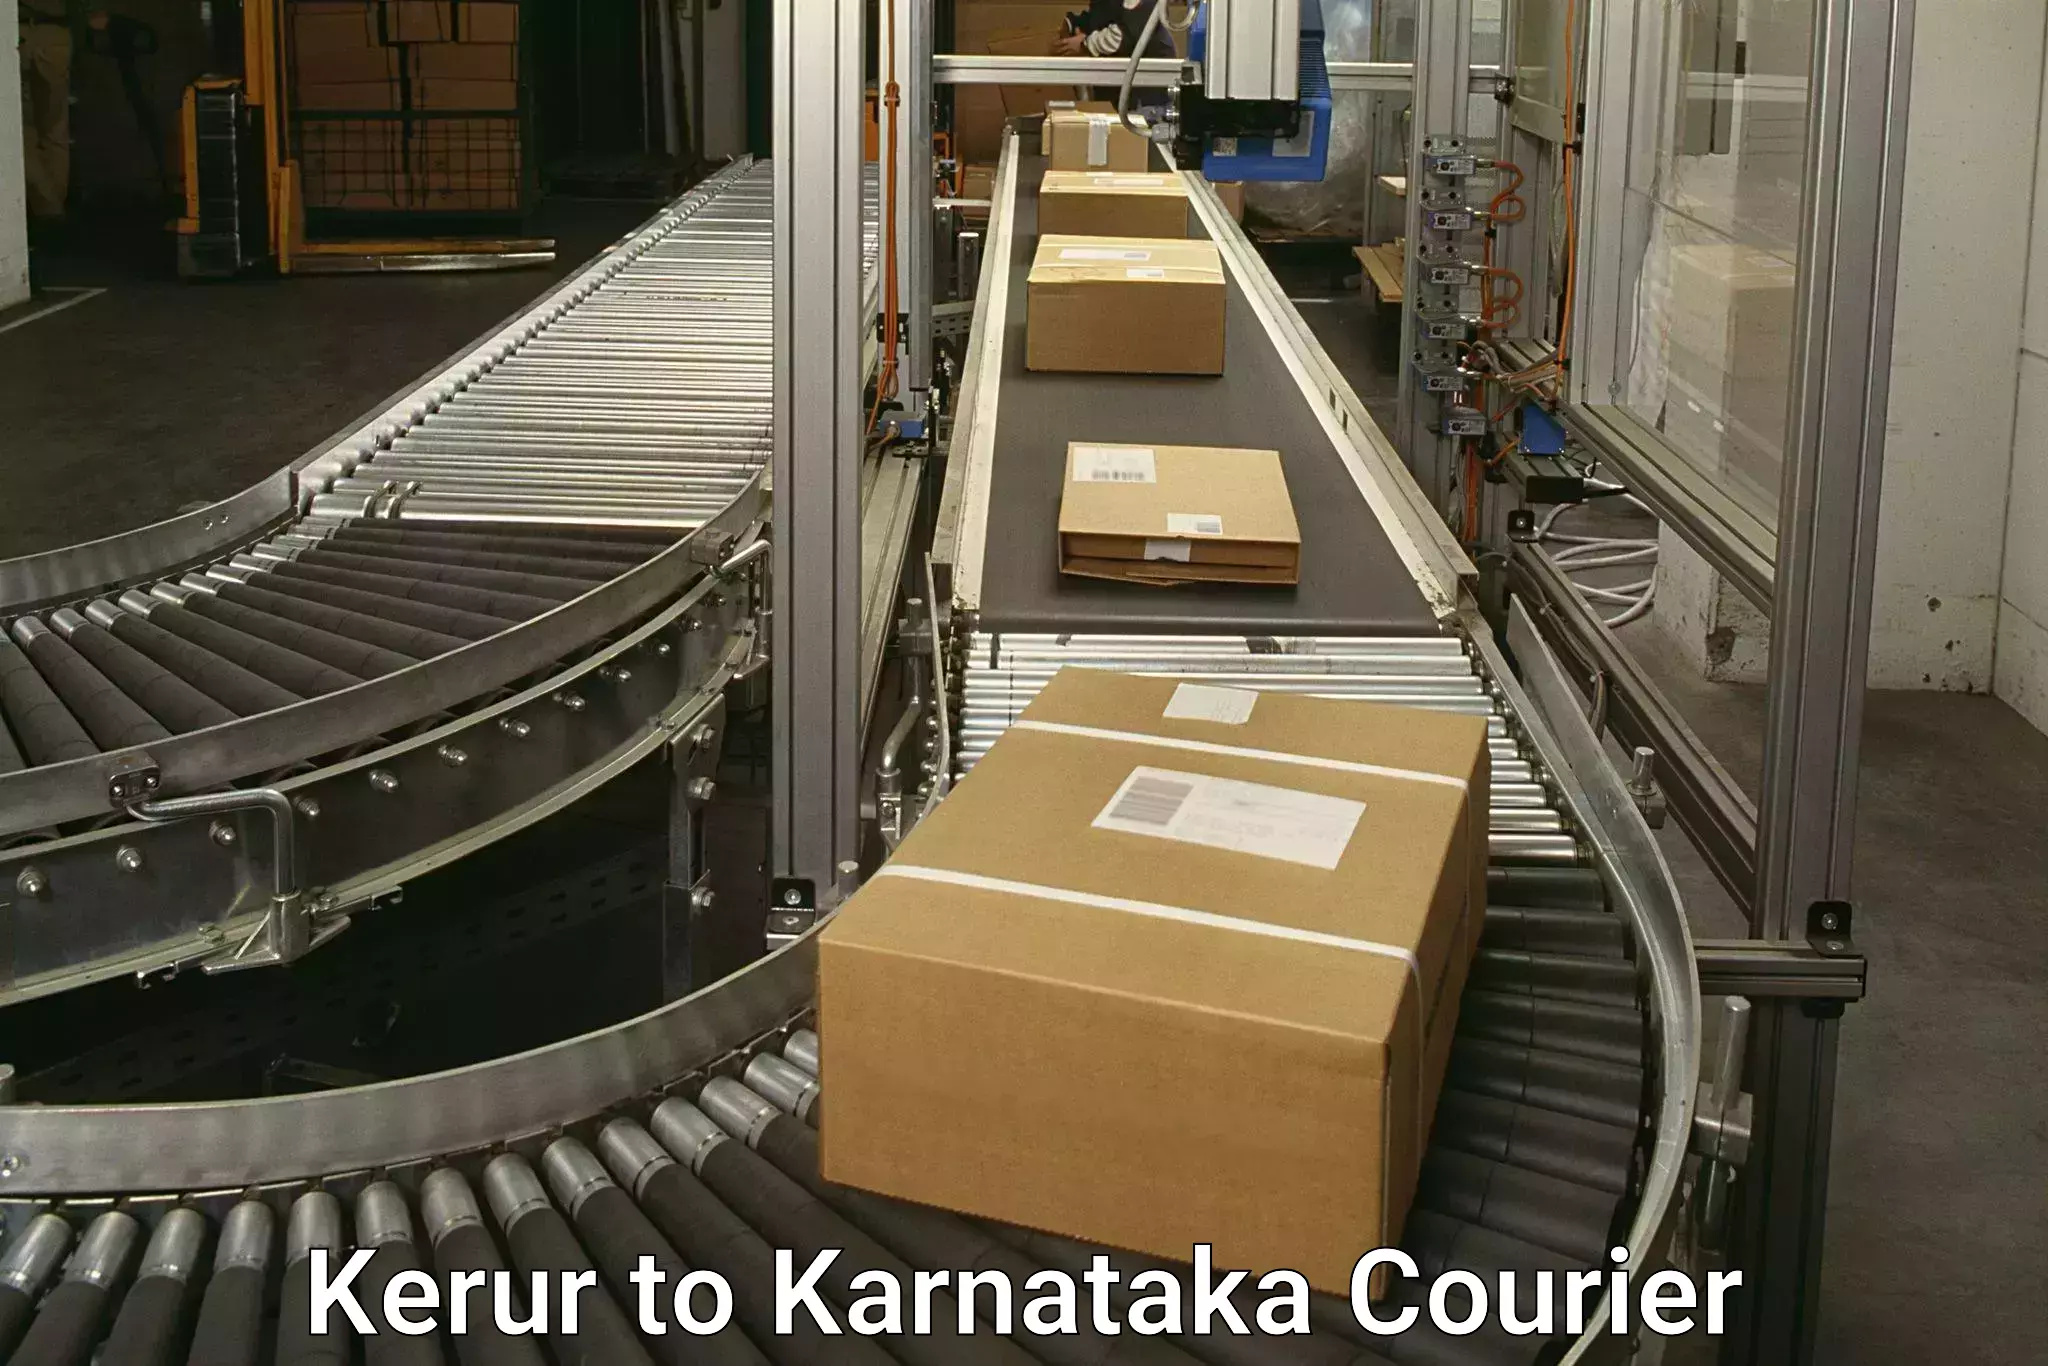 24-hour courier service Kerur to Alnavar